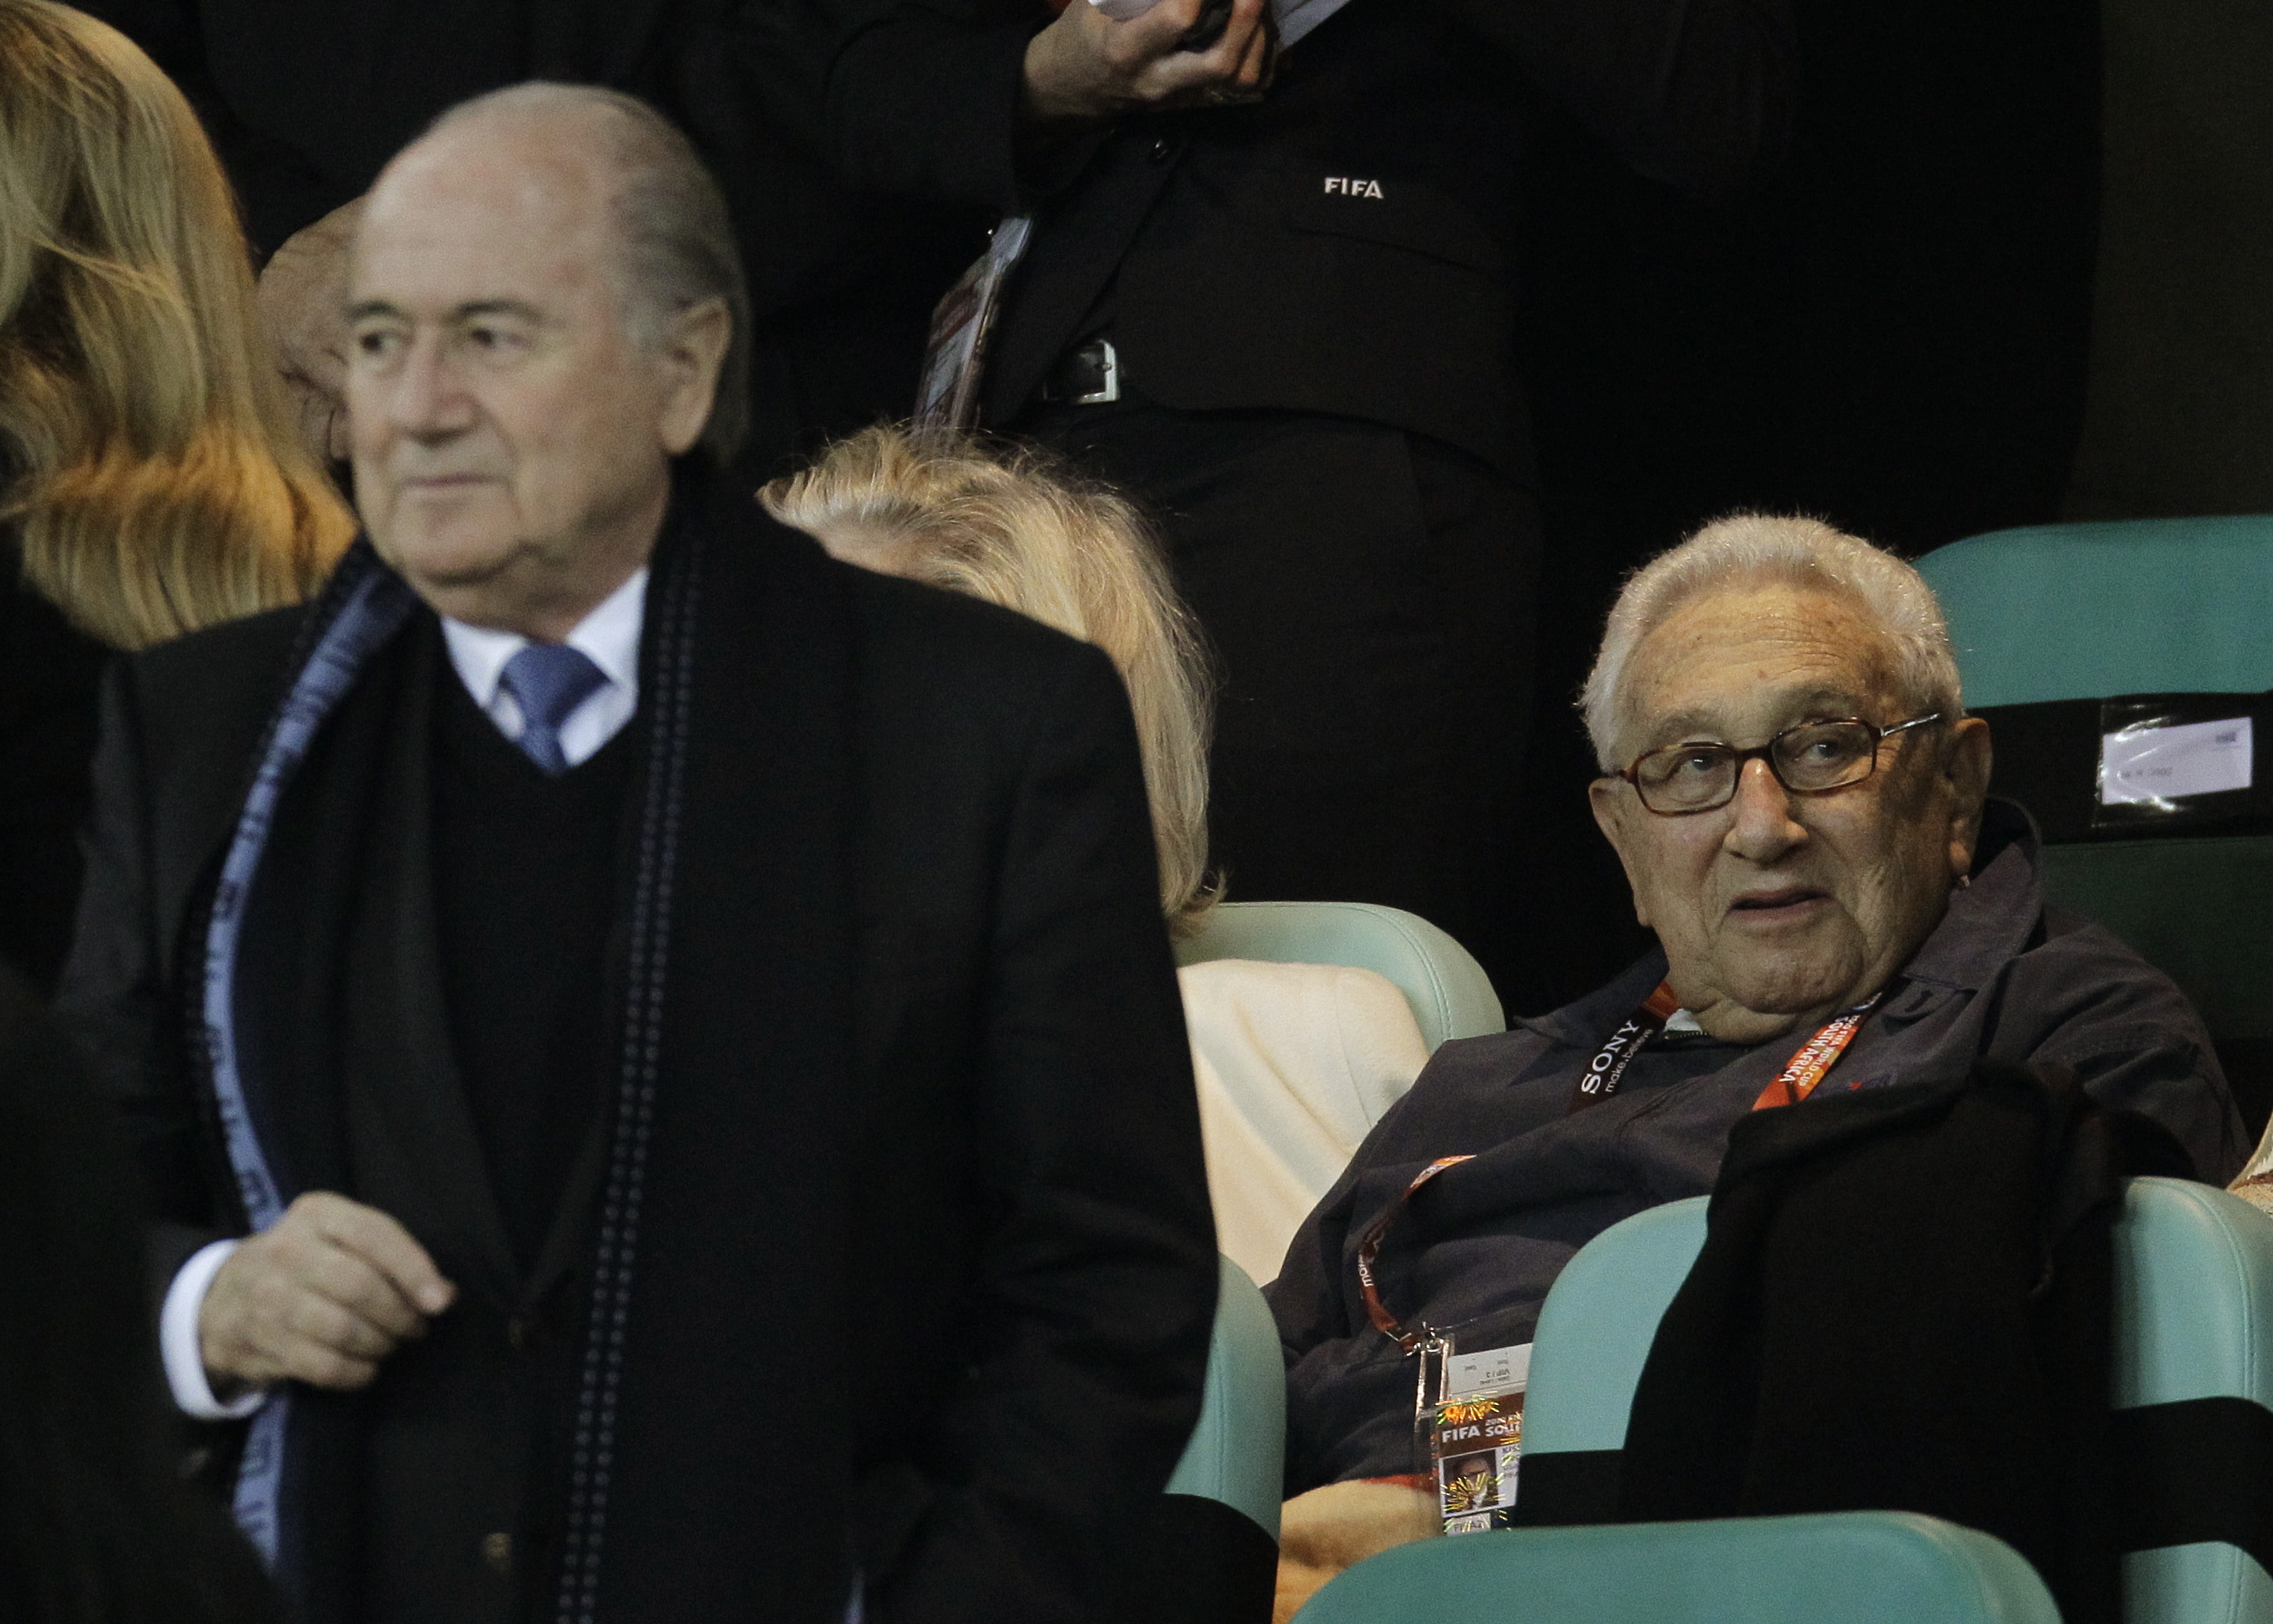 Sepp Blatter, Krig, Henry Kissinger, fifa